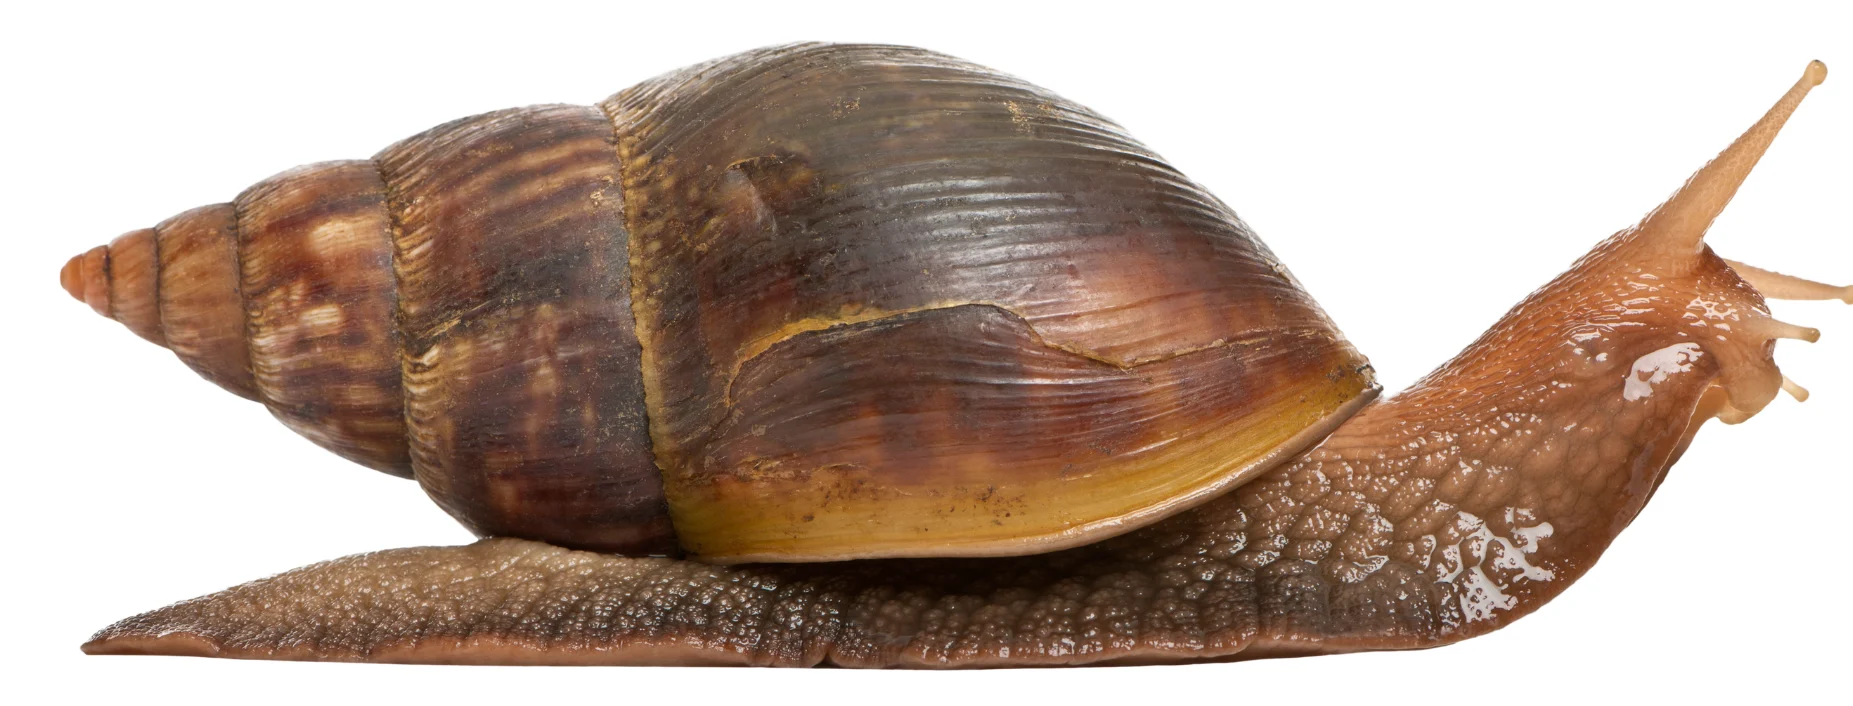 CANVA PRO - giant snail 2